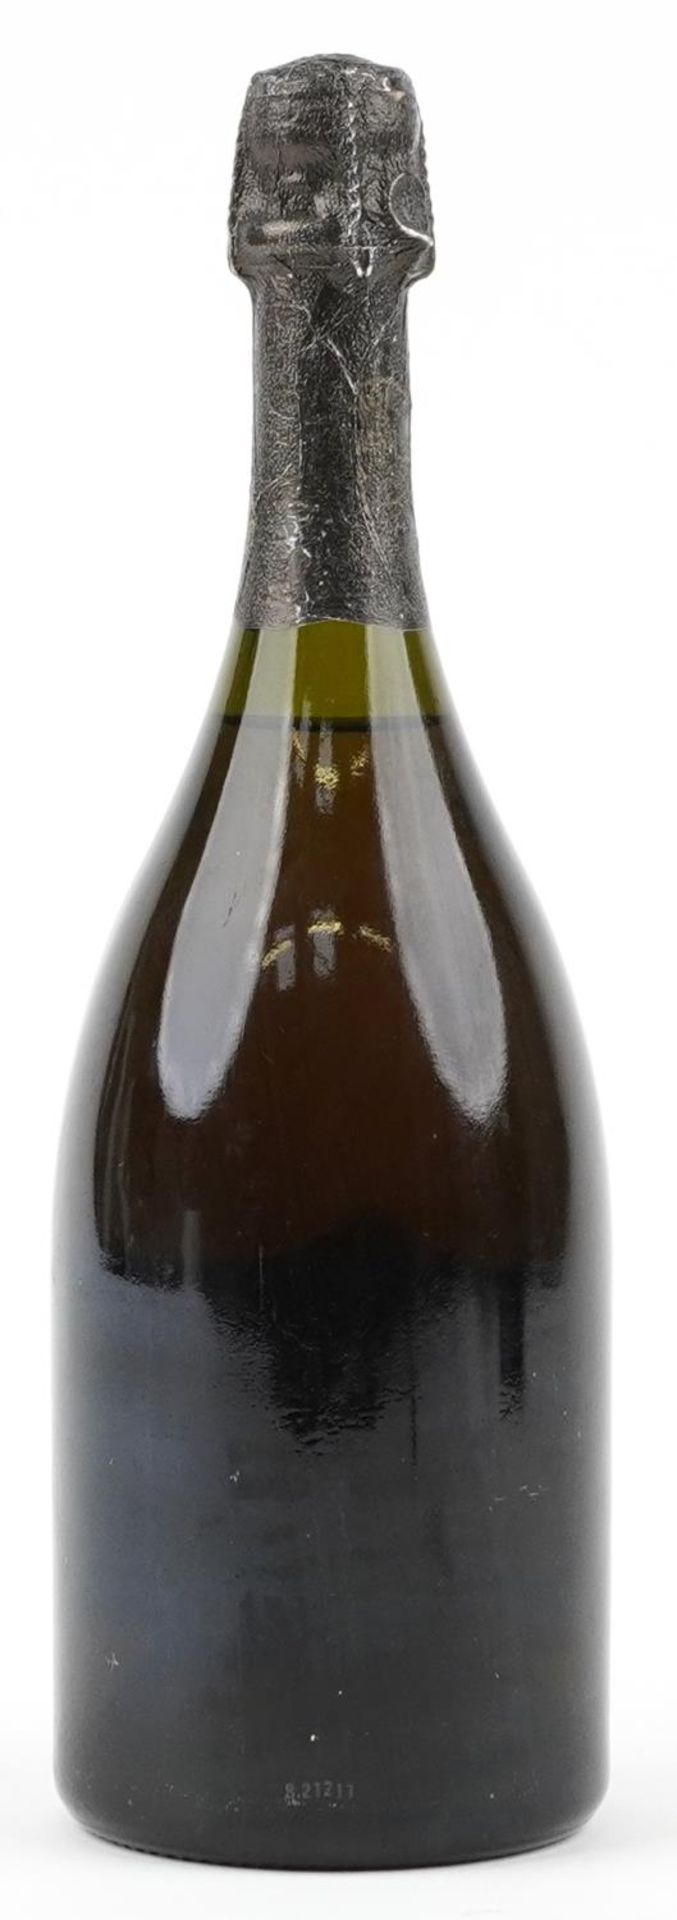 Bottle of Moet & Chandon Dom Perignon vintage 1980 Champagne - Bild 2 aus 2